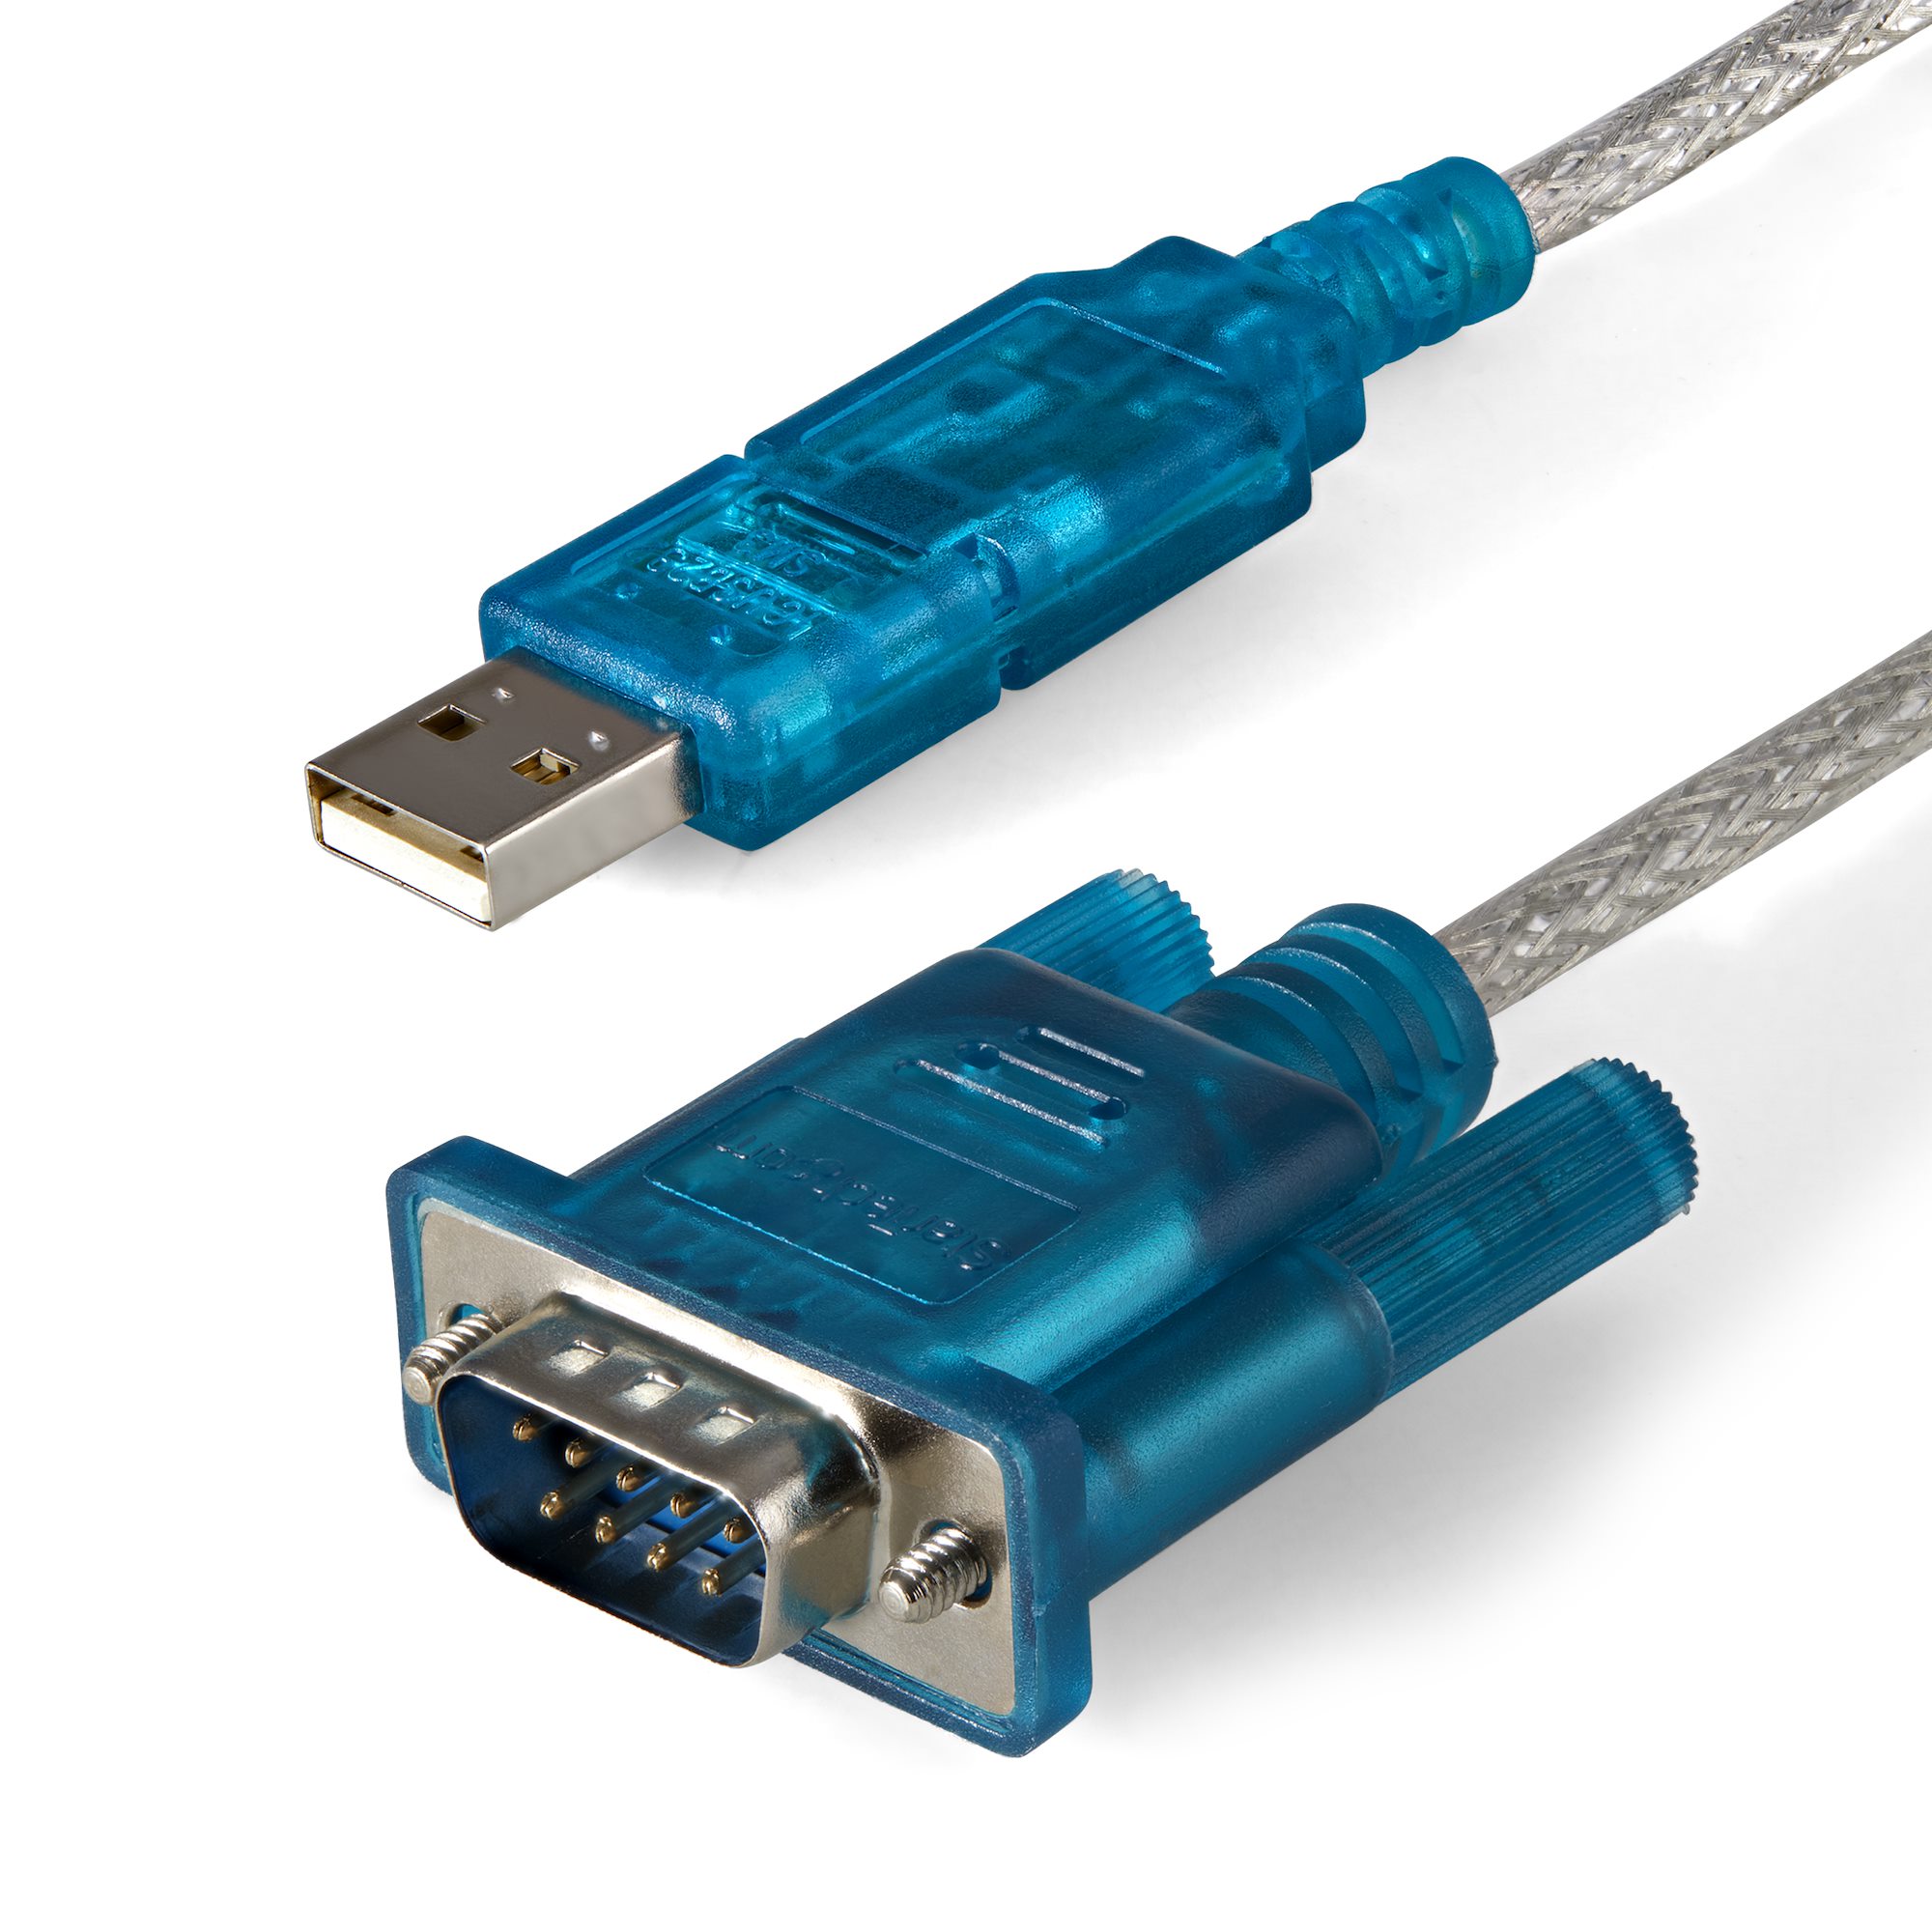 USB 8ポートシリアルRS232C変換ハブ 8x シリアルD-Sub 9ピンハブ デイジーチェーン機能 ラッ 通販 